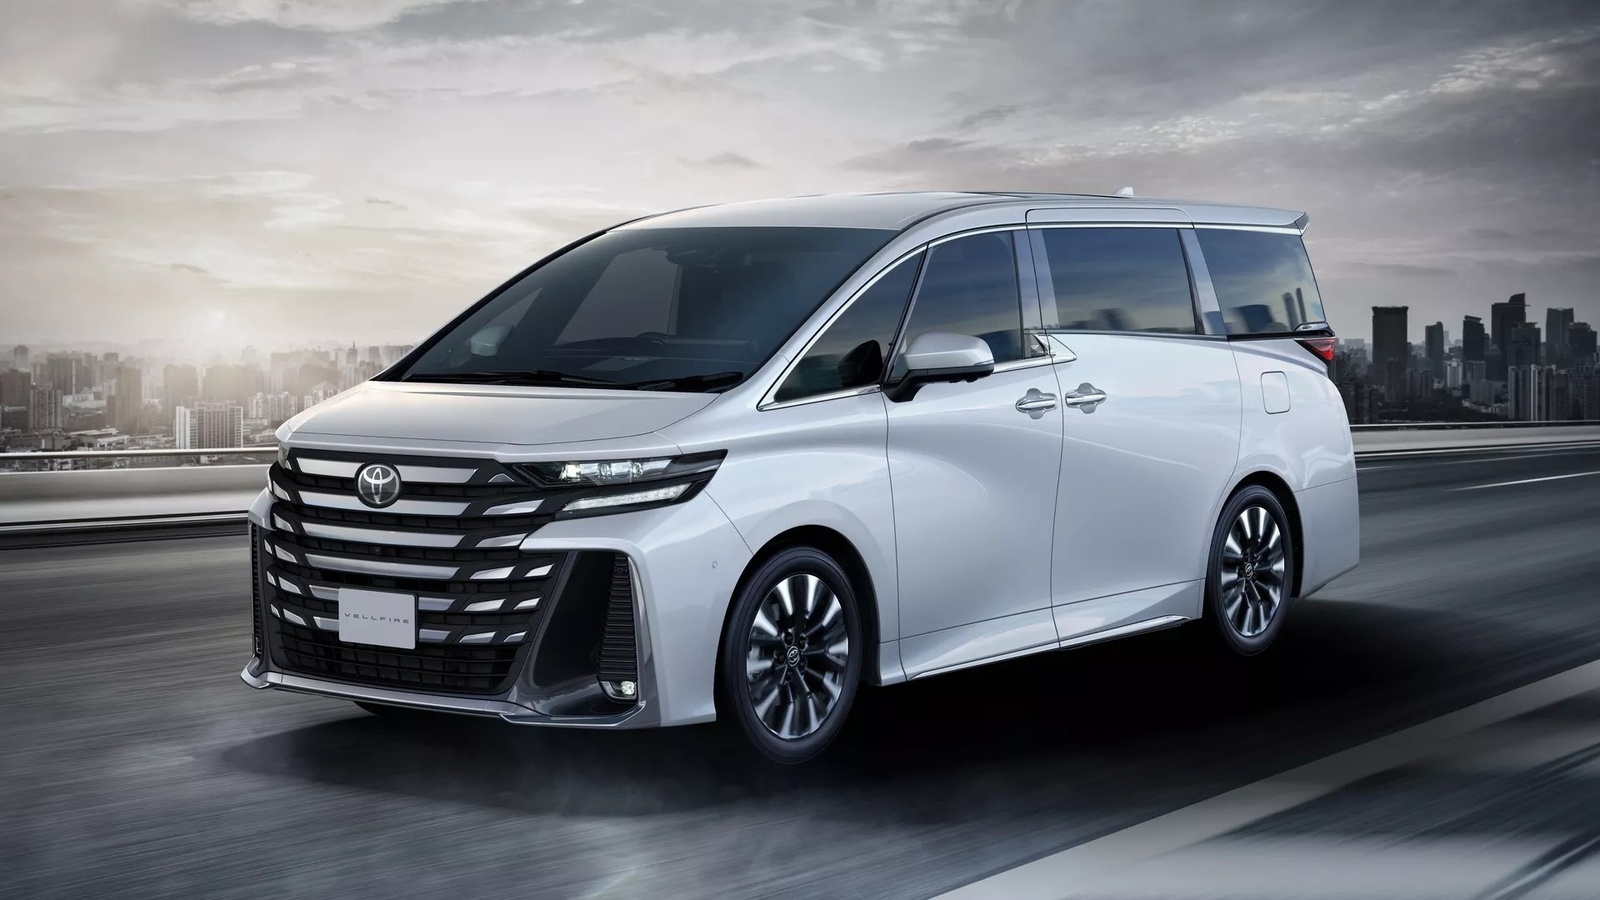 Tháng 11 và loạt ô tô mới sắp ra mắt khách Việt, Toyota có luôn cả ‘chuyên cơ’